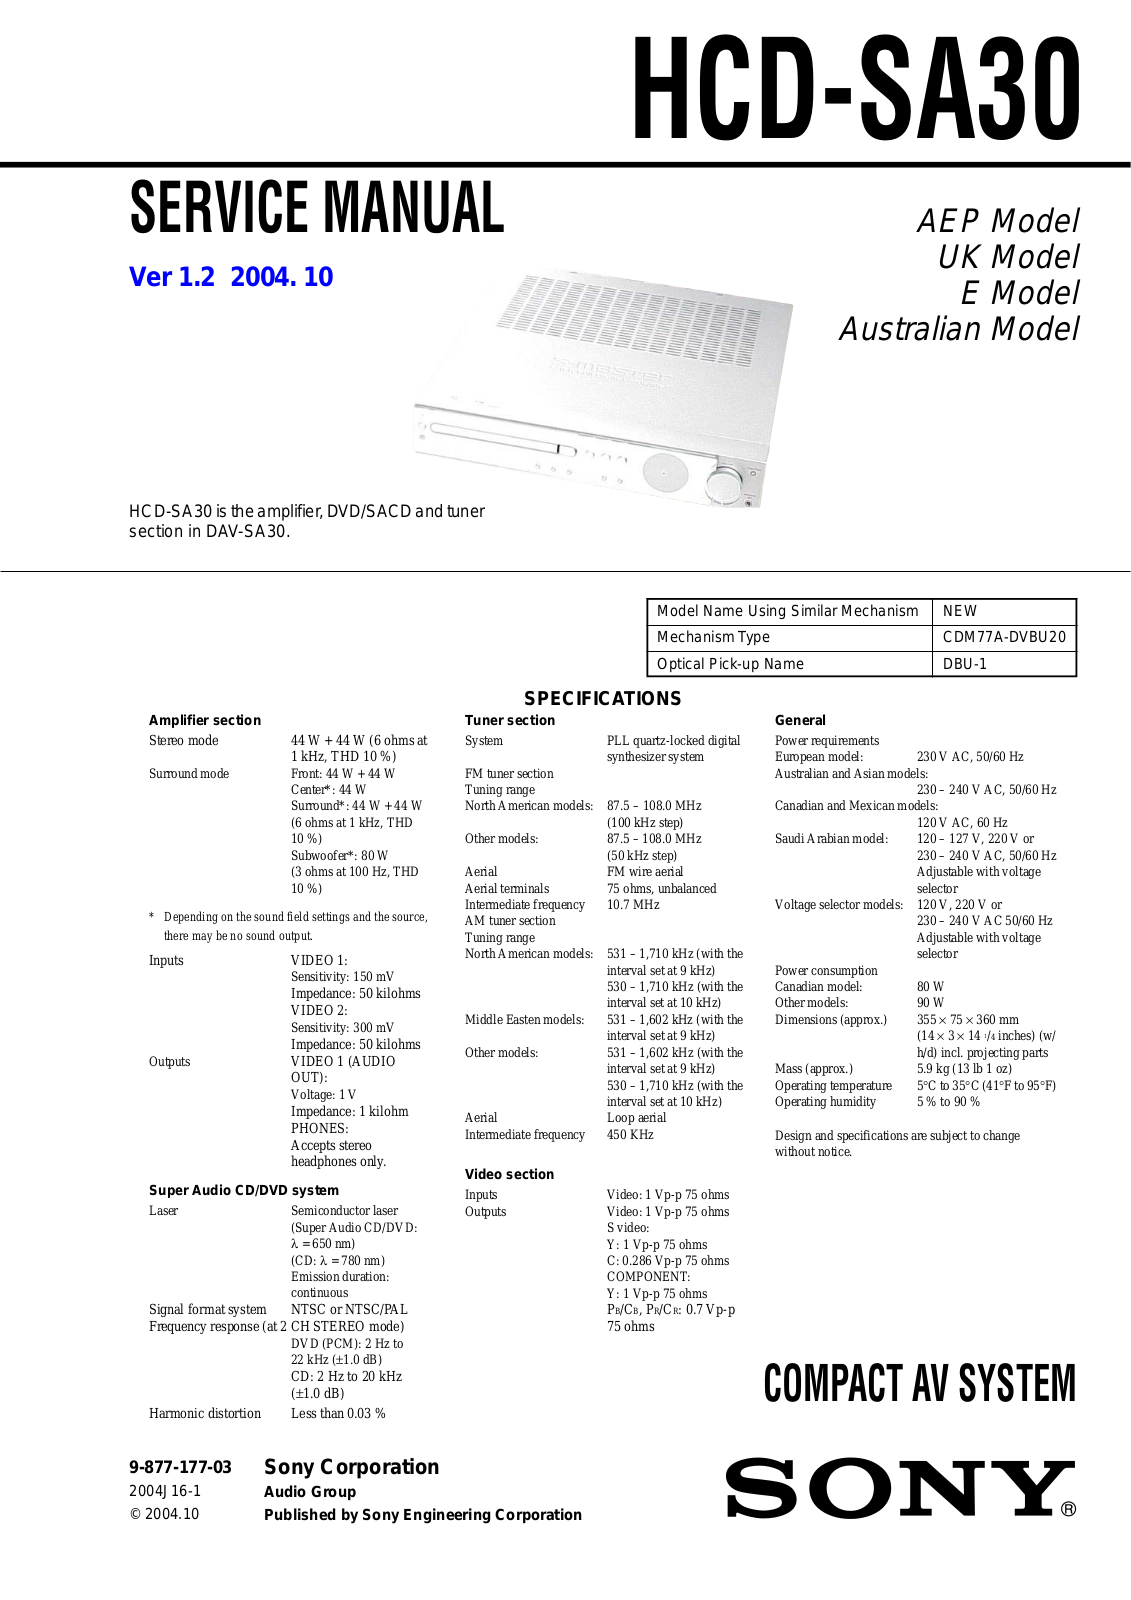 Sony HCD SA30 Service Manual v1.2